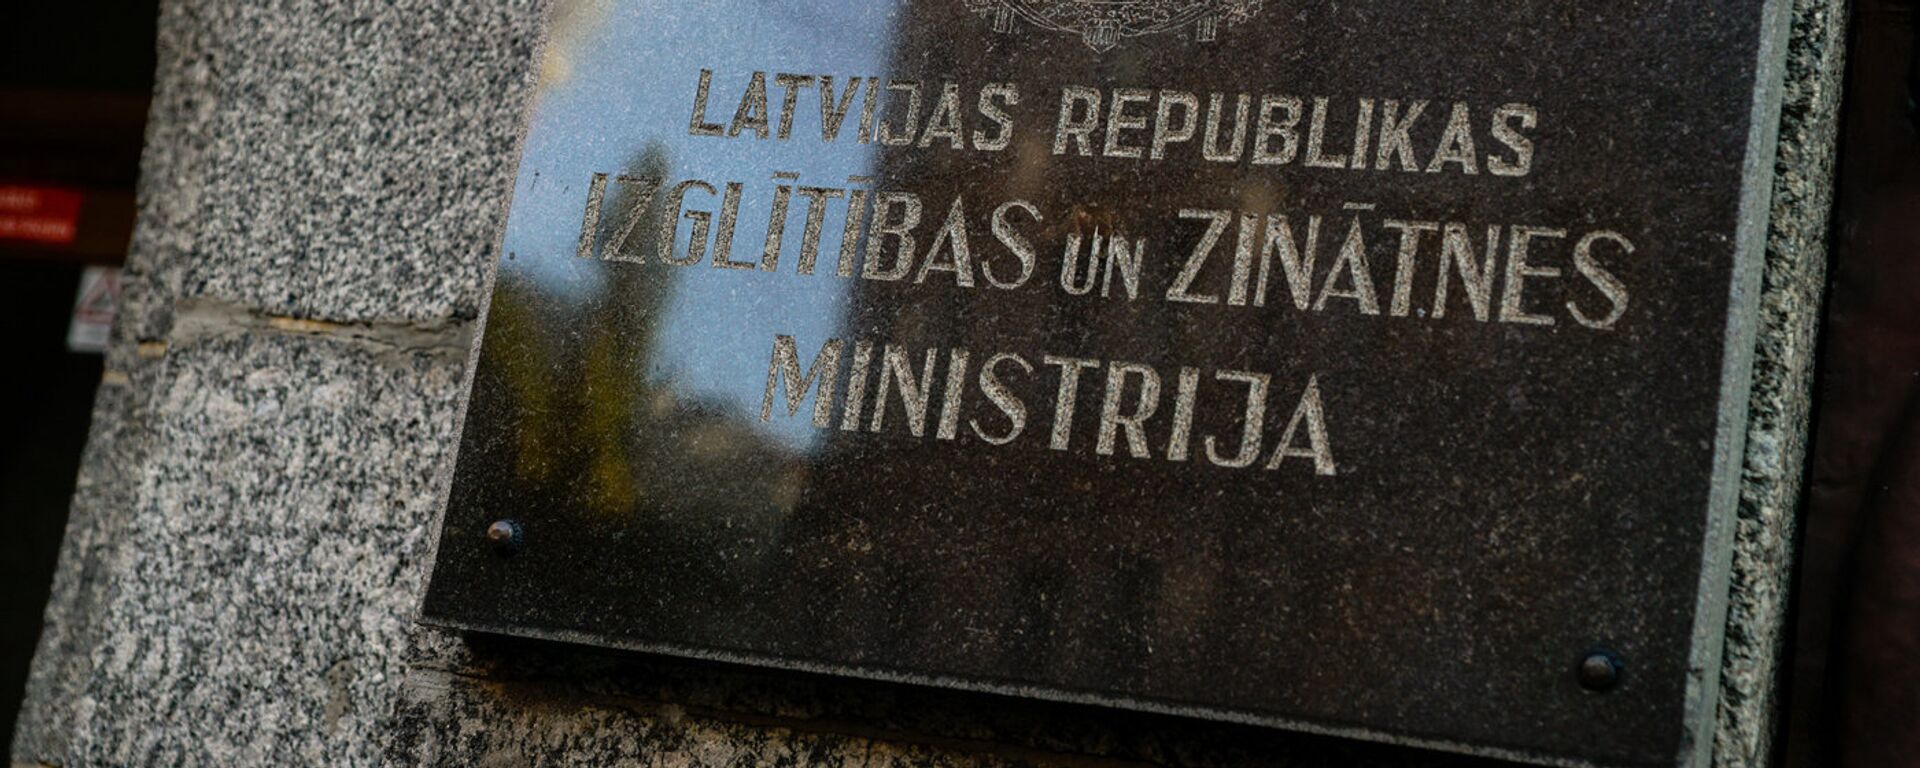 Министерство образования и науки Латвии - Sputnik Латвия, 1920, 29.08.2021